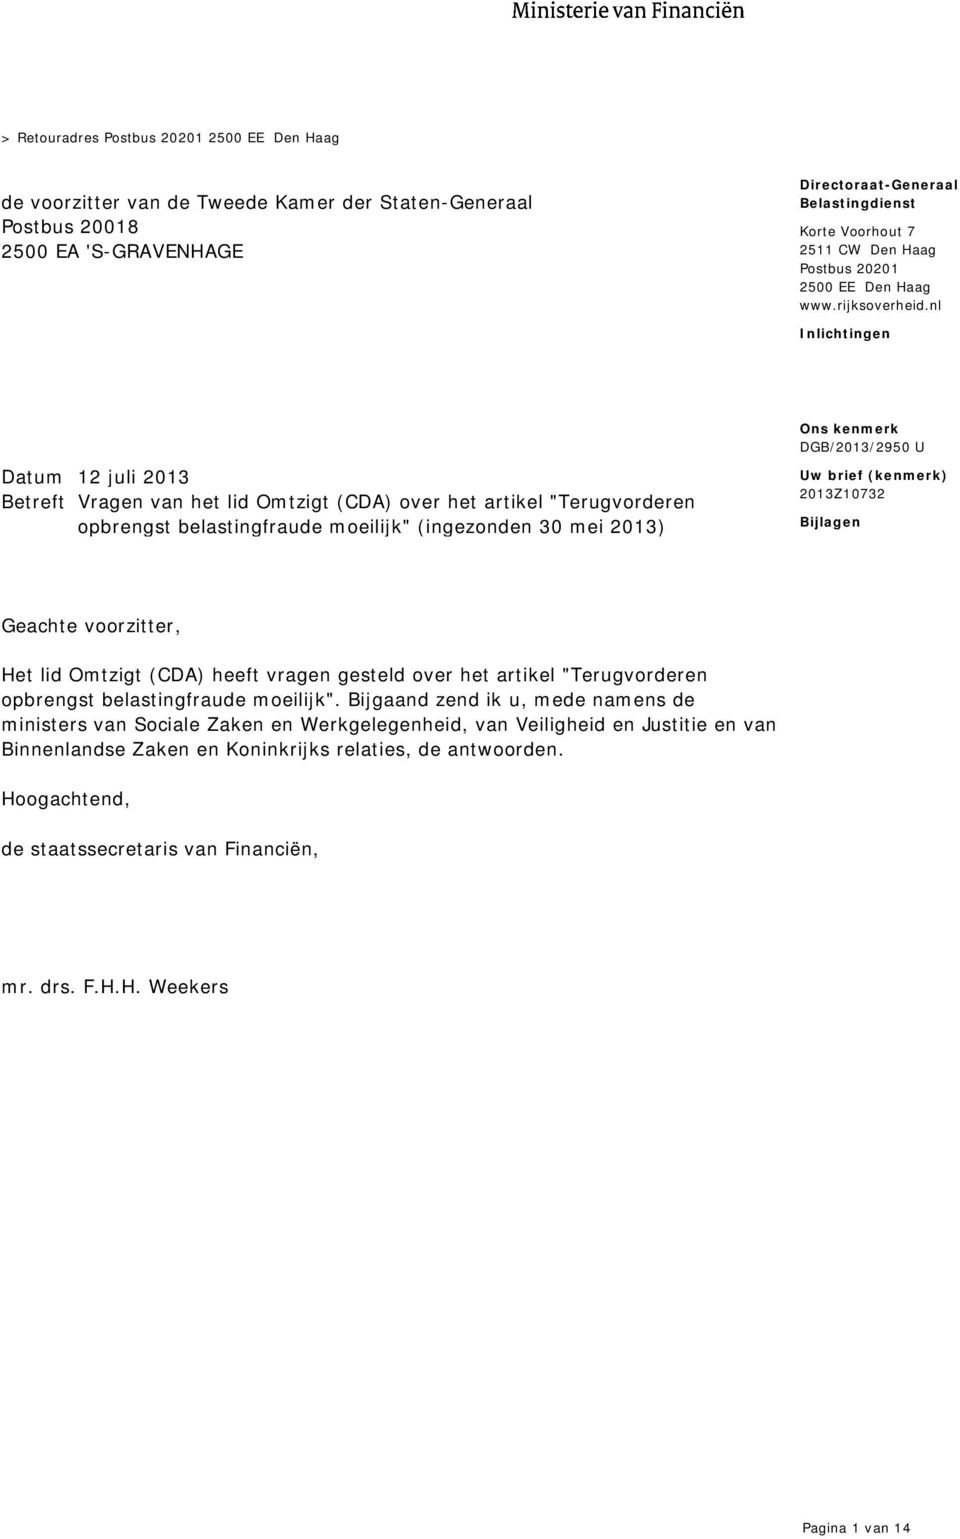 nl Inlichtingen Datum 12 juli 2013 Betreft Vragen van het lid Omtzigt (CDA) over het artikel "Terugvorderen opbrengst belastingfraude moeilijk" (ingezonden 30 mei 2013) Uw brief (kenmerk) 2013Z10732